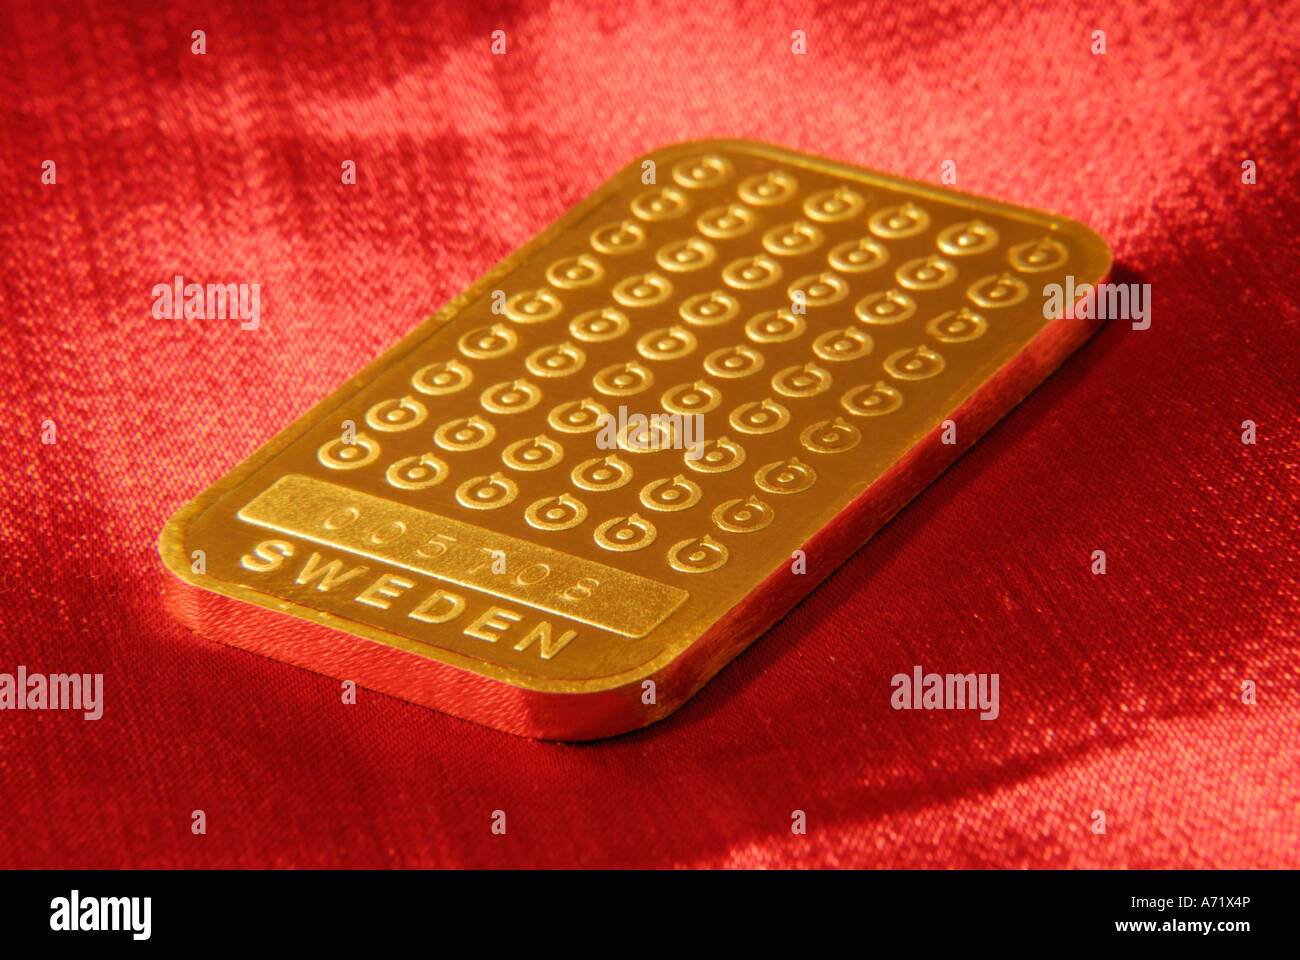 100 Gramm schwere solide Goldbarren aus schwedischen Bergbauunternehmen Boliden hautnah Stockfoto